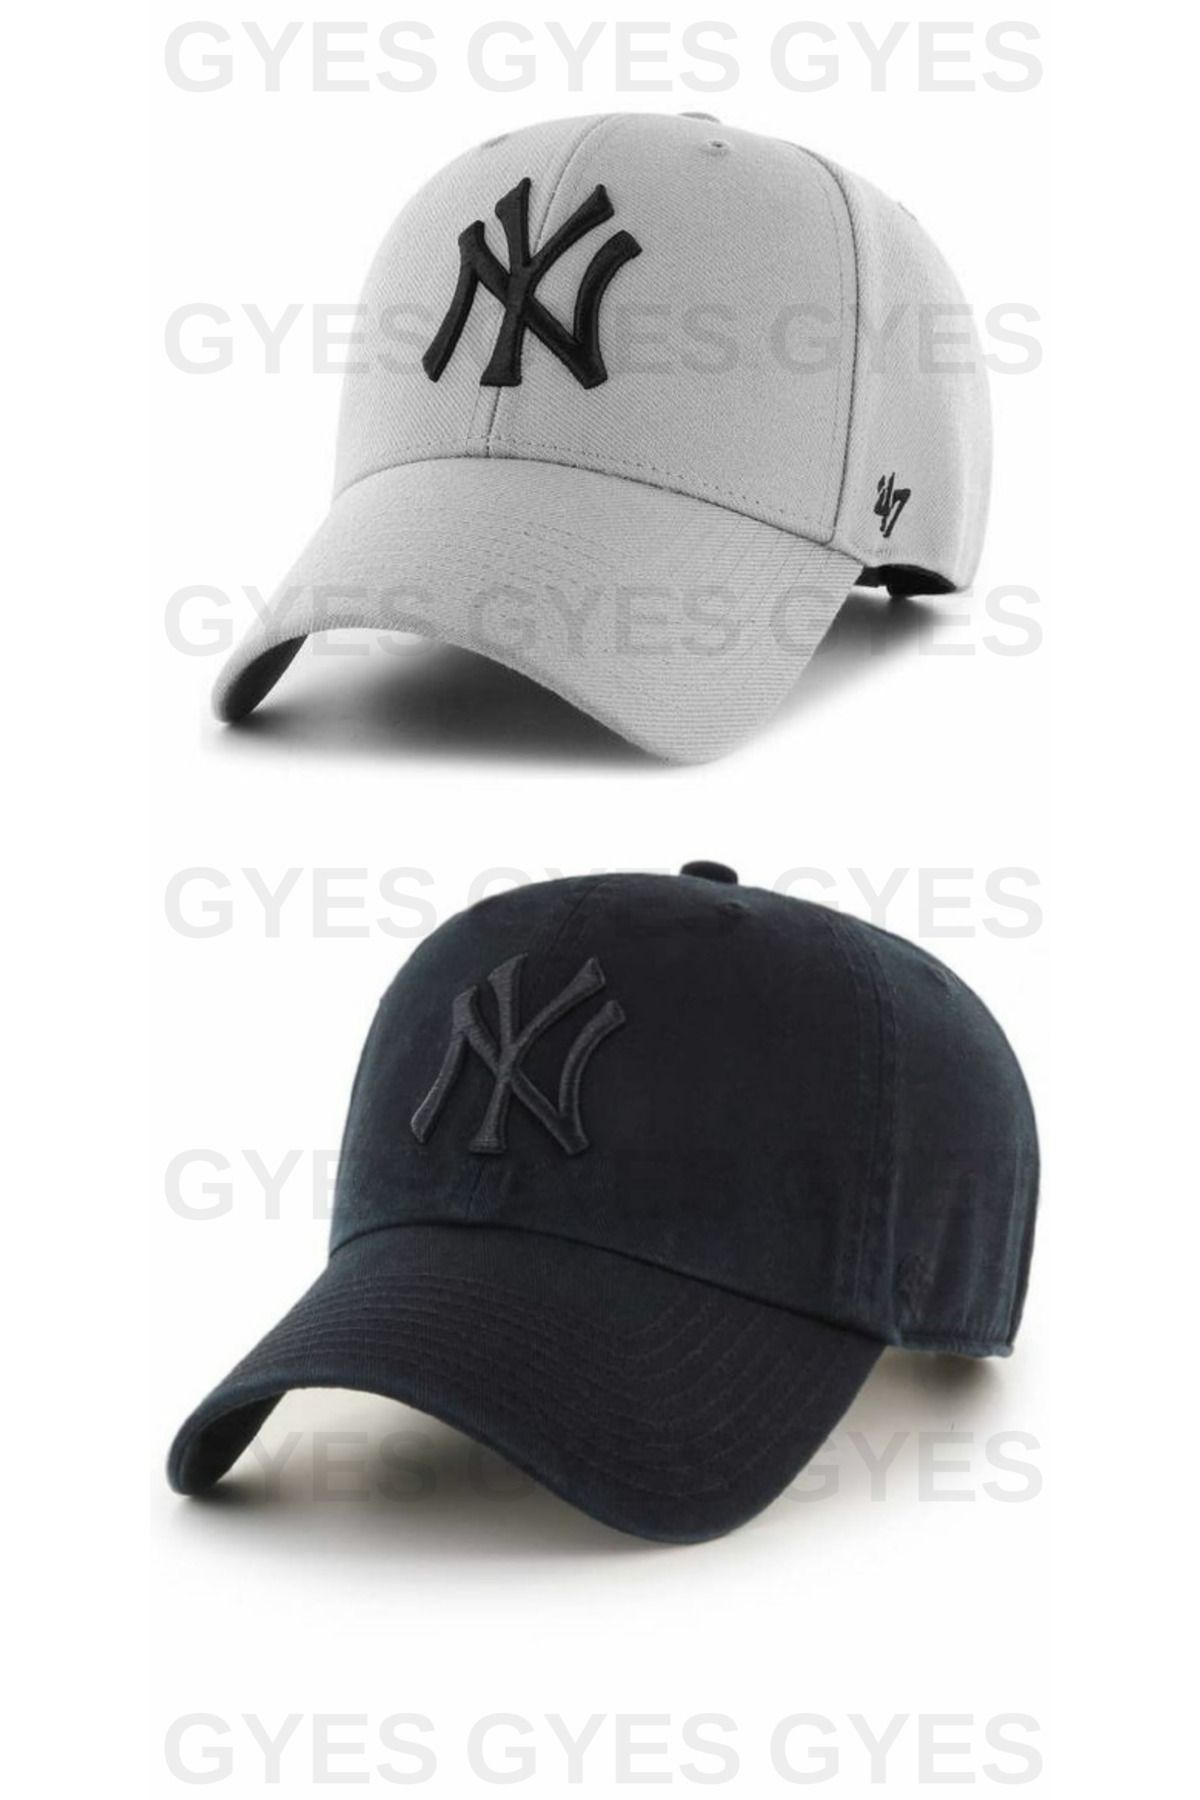 GYES Spor Ny Şapka Unisex 2'li Takım Arkası Cırtlı Ayarlanabilir